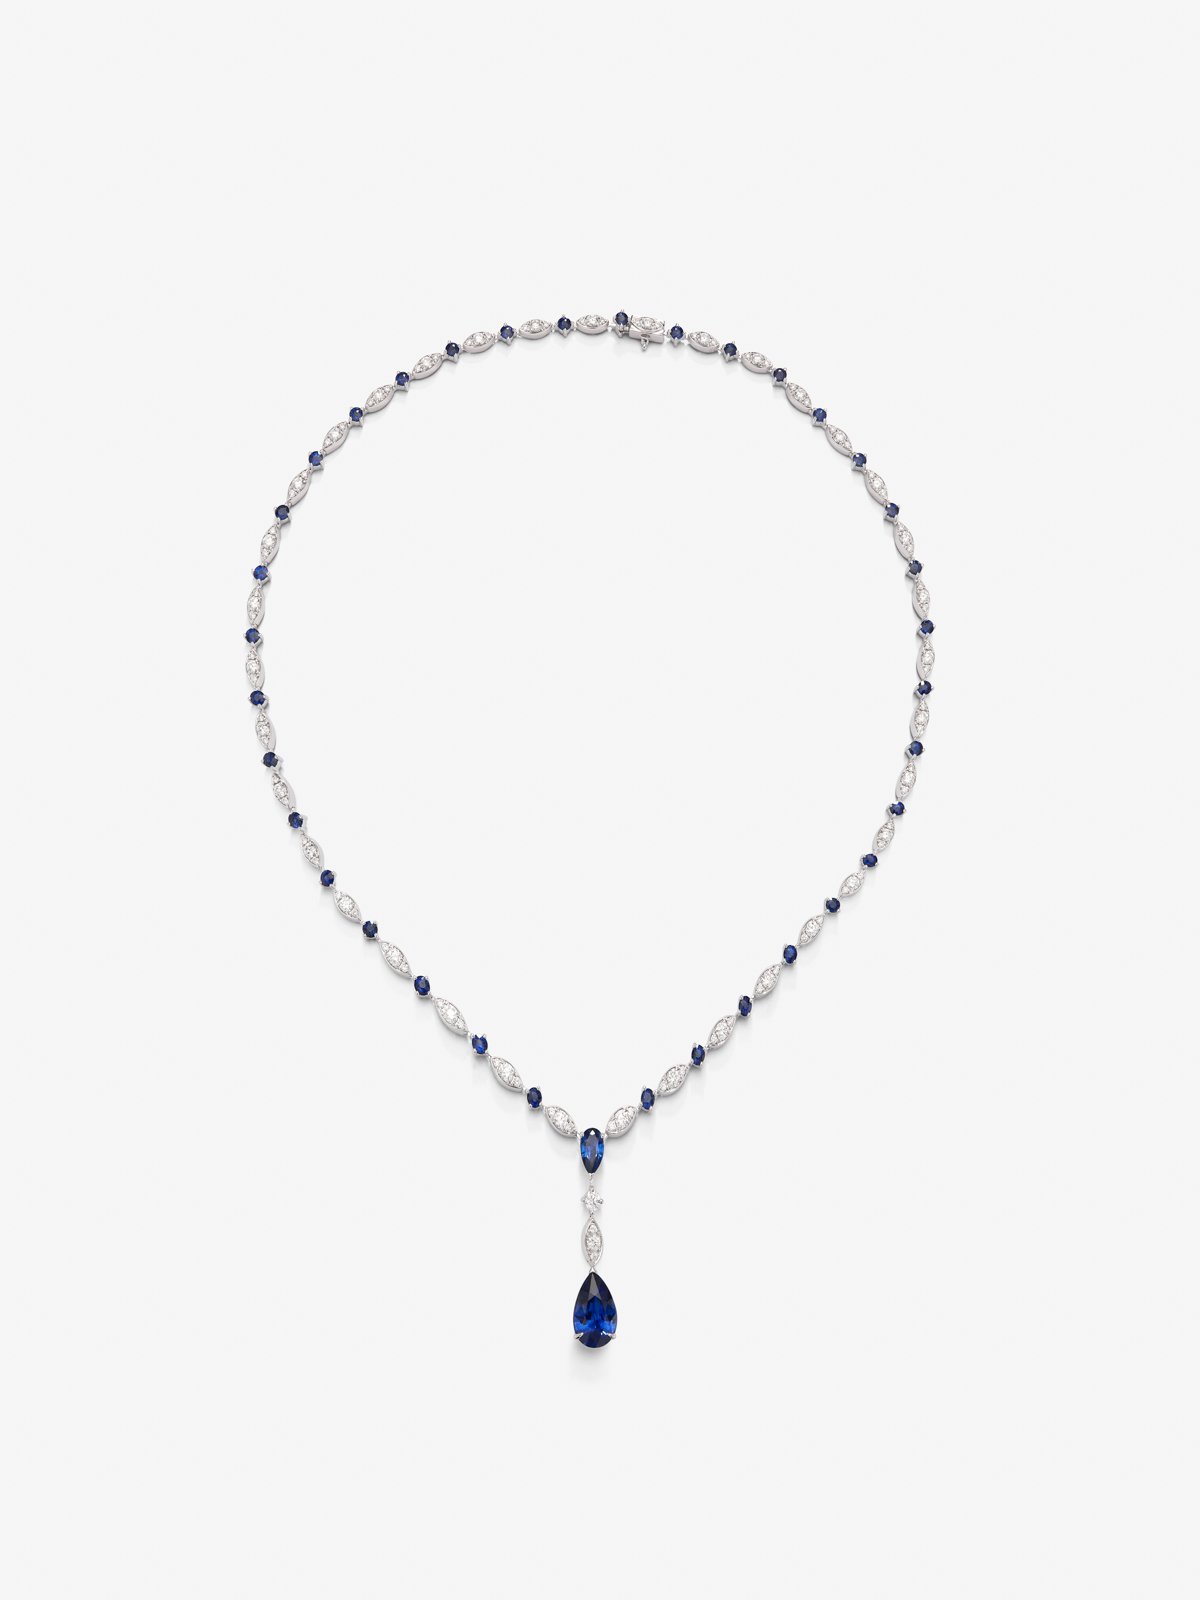 Collar de oro blanco de 18K con zafiro azul royal en talla pera de 3,56, zafiros azules en talla pera y brillante de 4,6 cts y diamantes blancos en talla brillante de 3,15 cts